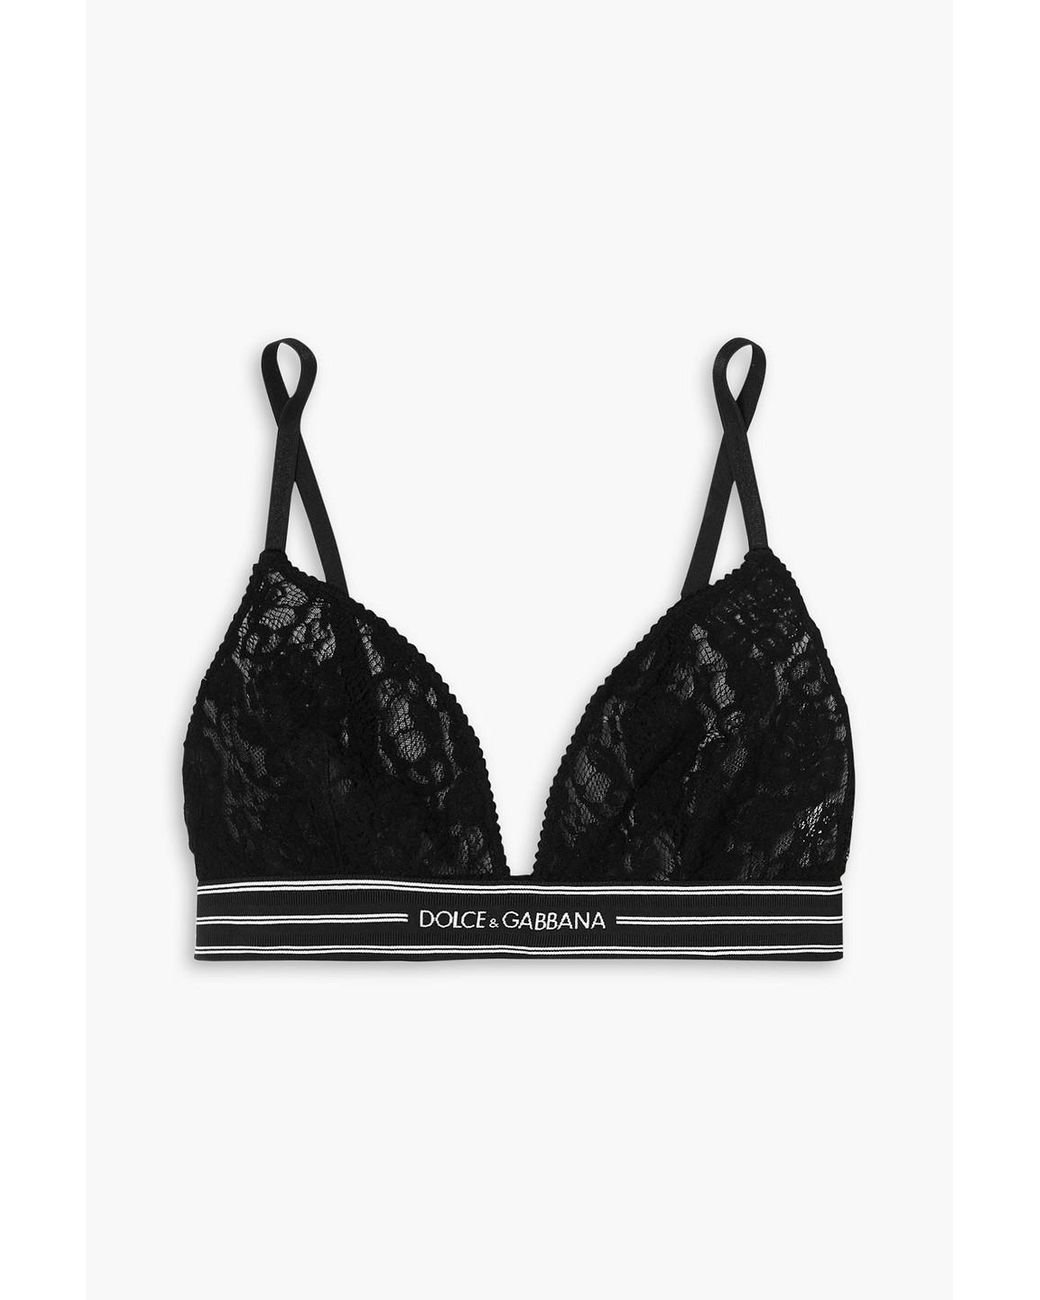 Dolce & Gabbana Stretch-lace Triangle Bra in Black